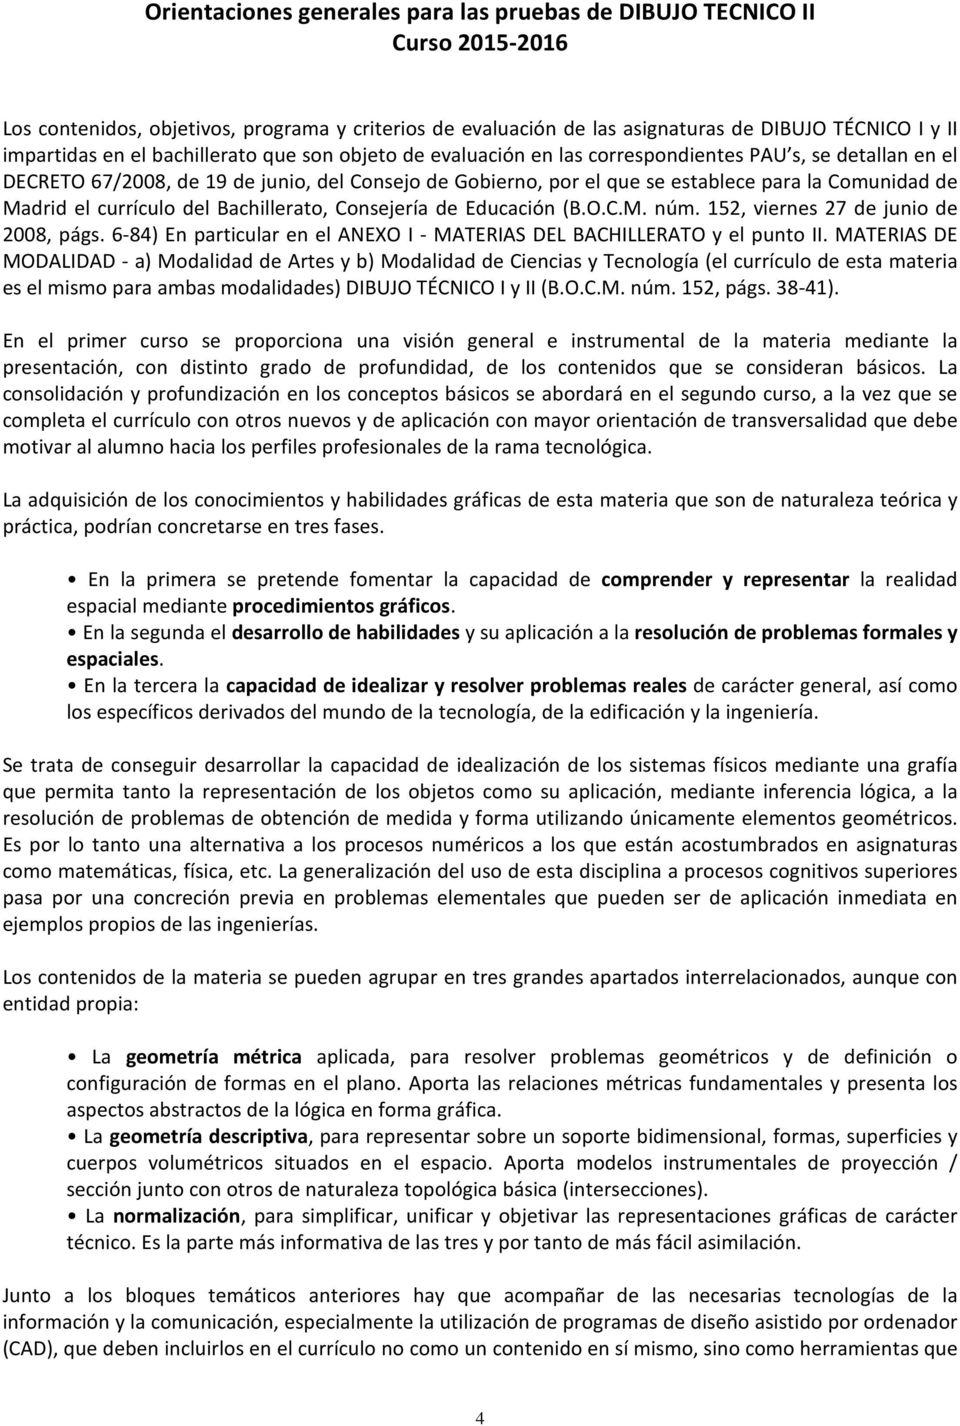 Madrid el currículo del Bachillerato, Consejería de Educación (B.O.C.M. núm. 152, viernes 27 de junio de 2008, págs. 6-84) En particular en el ANEXO I - MATERIAS DEL BACHILLERATO y el punto II.